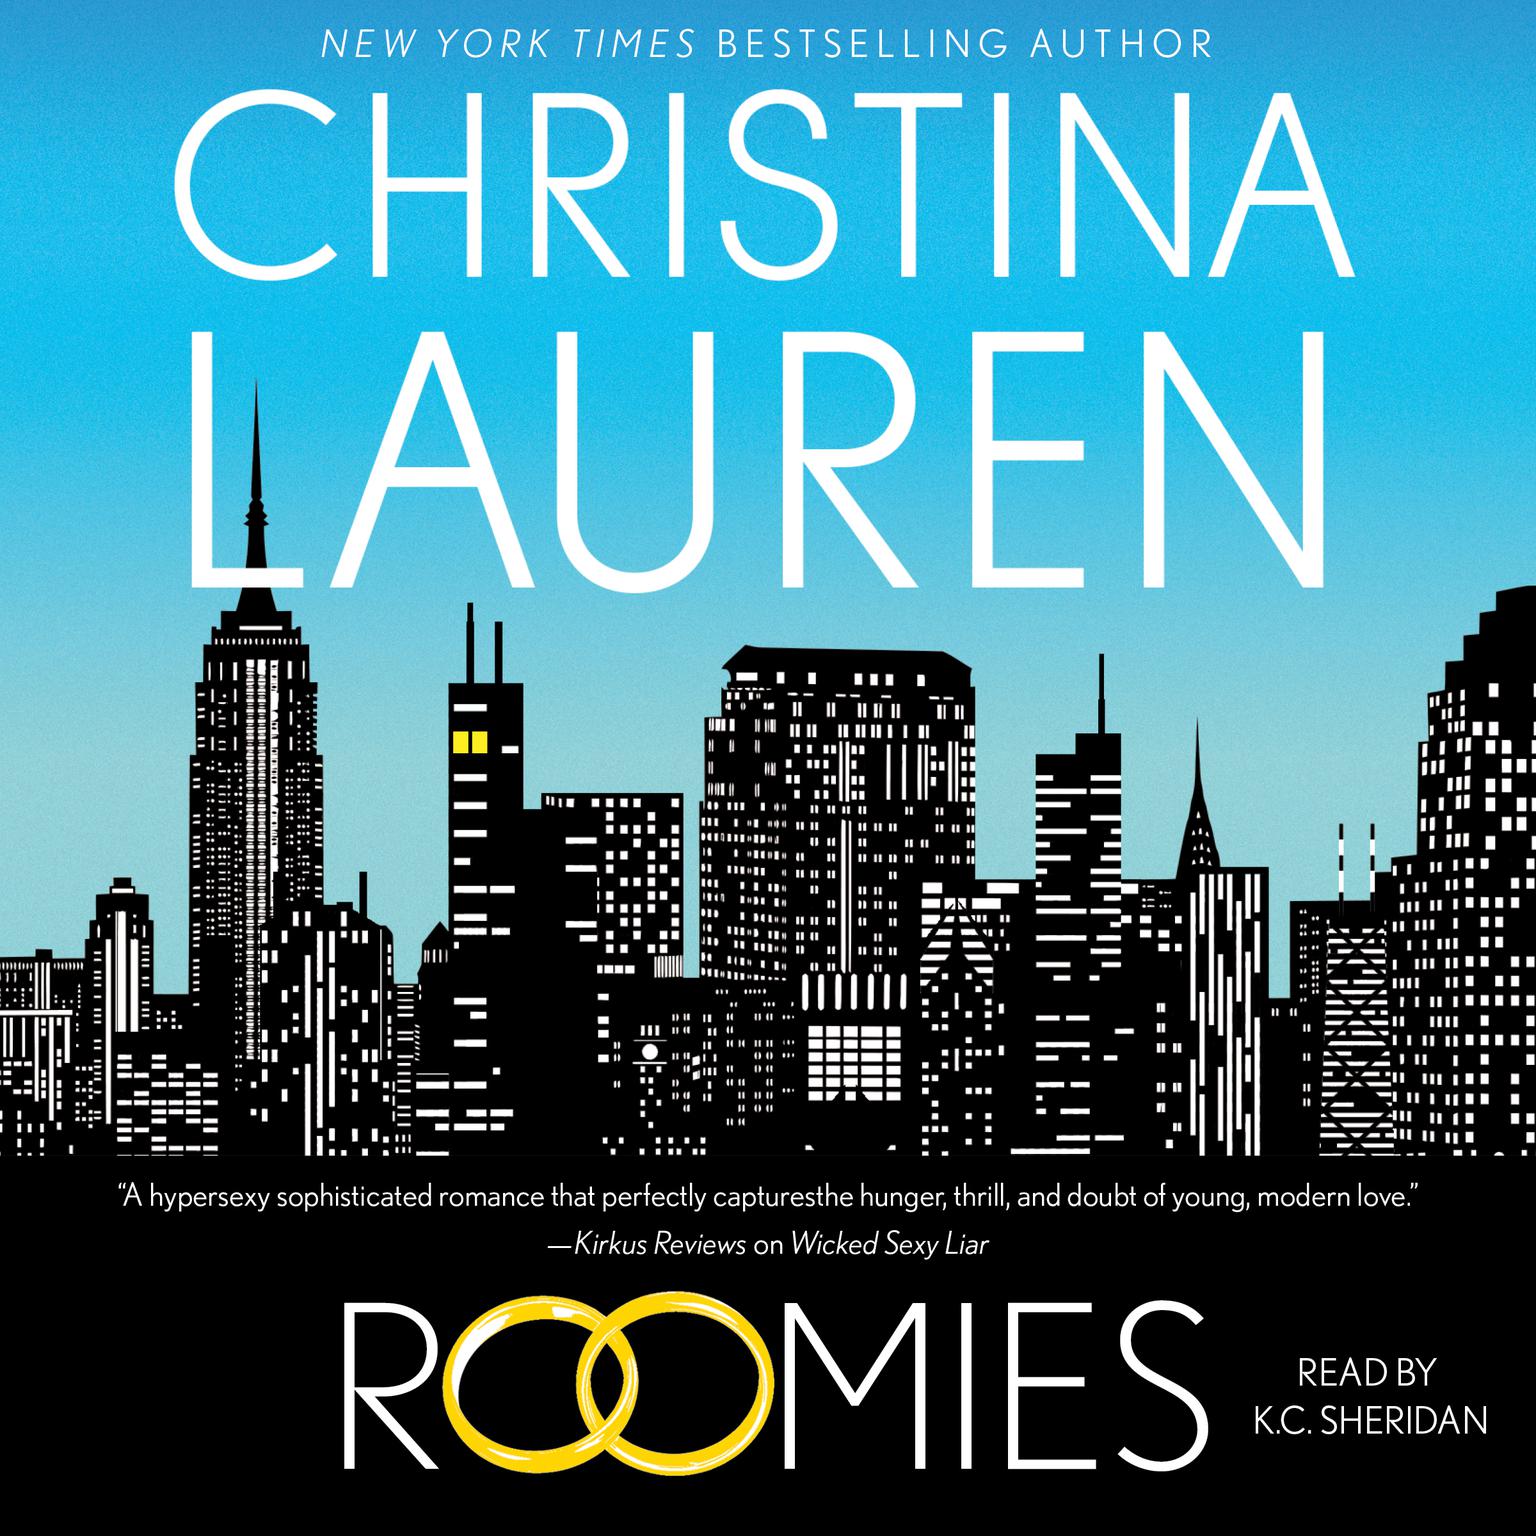 Roomies Audiobook, by Christina Lauren